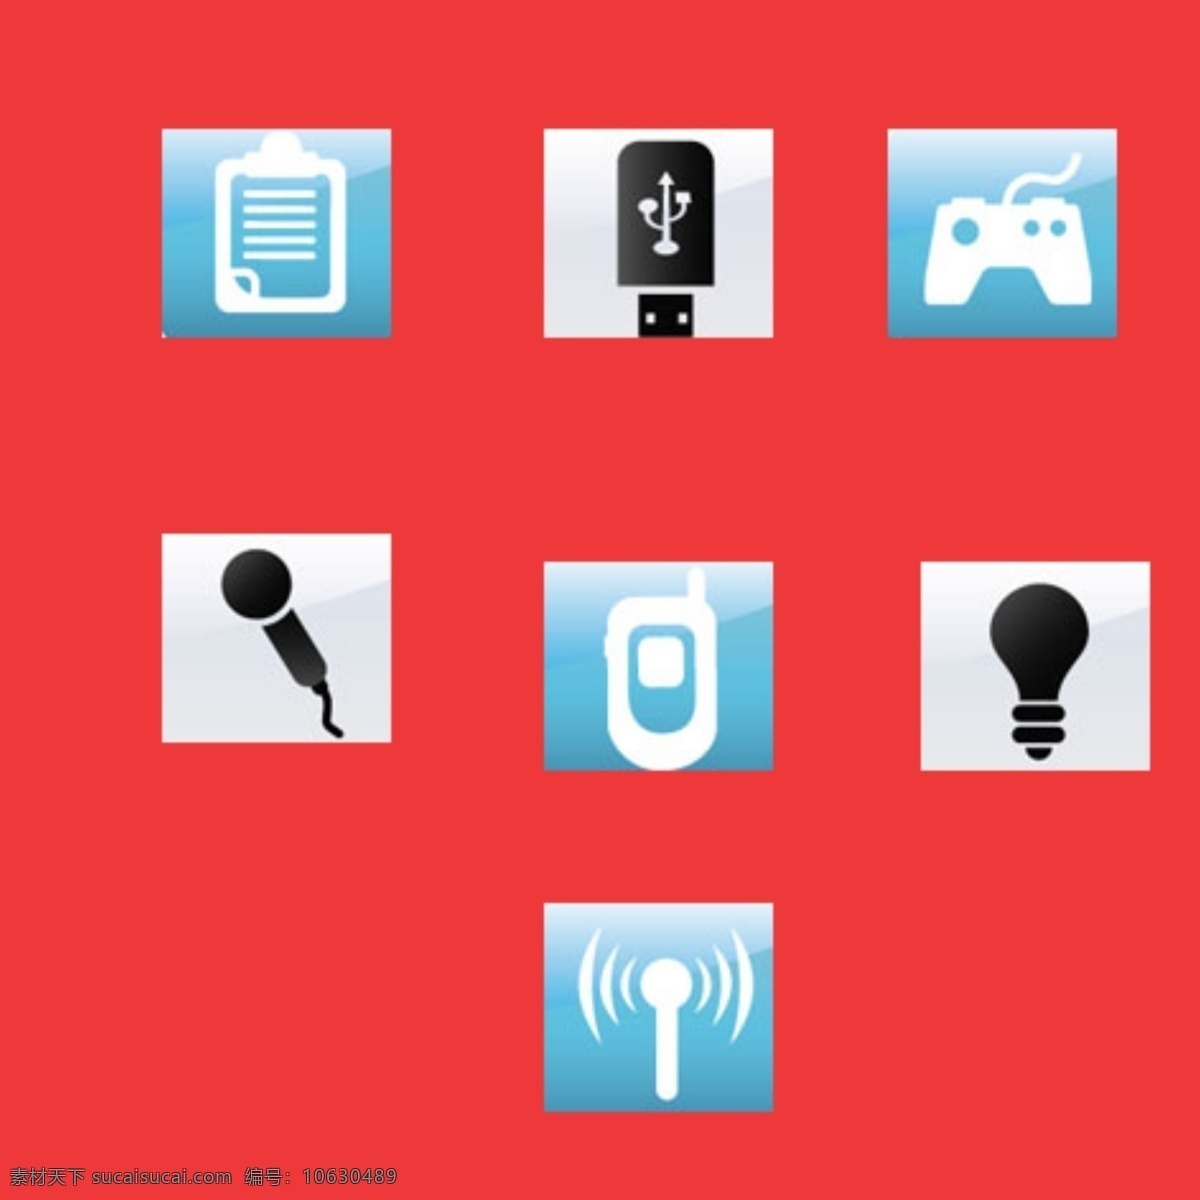 手机 信号 话筒图标 手机信号软件 图标素材 展示 app app图标